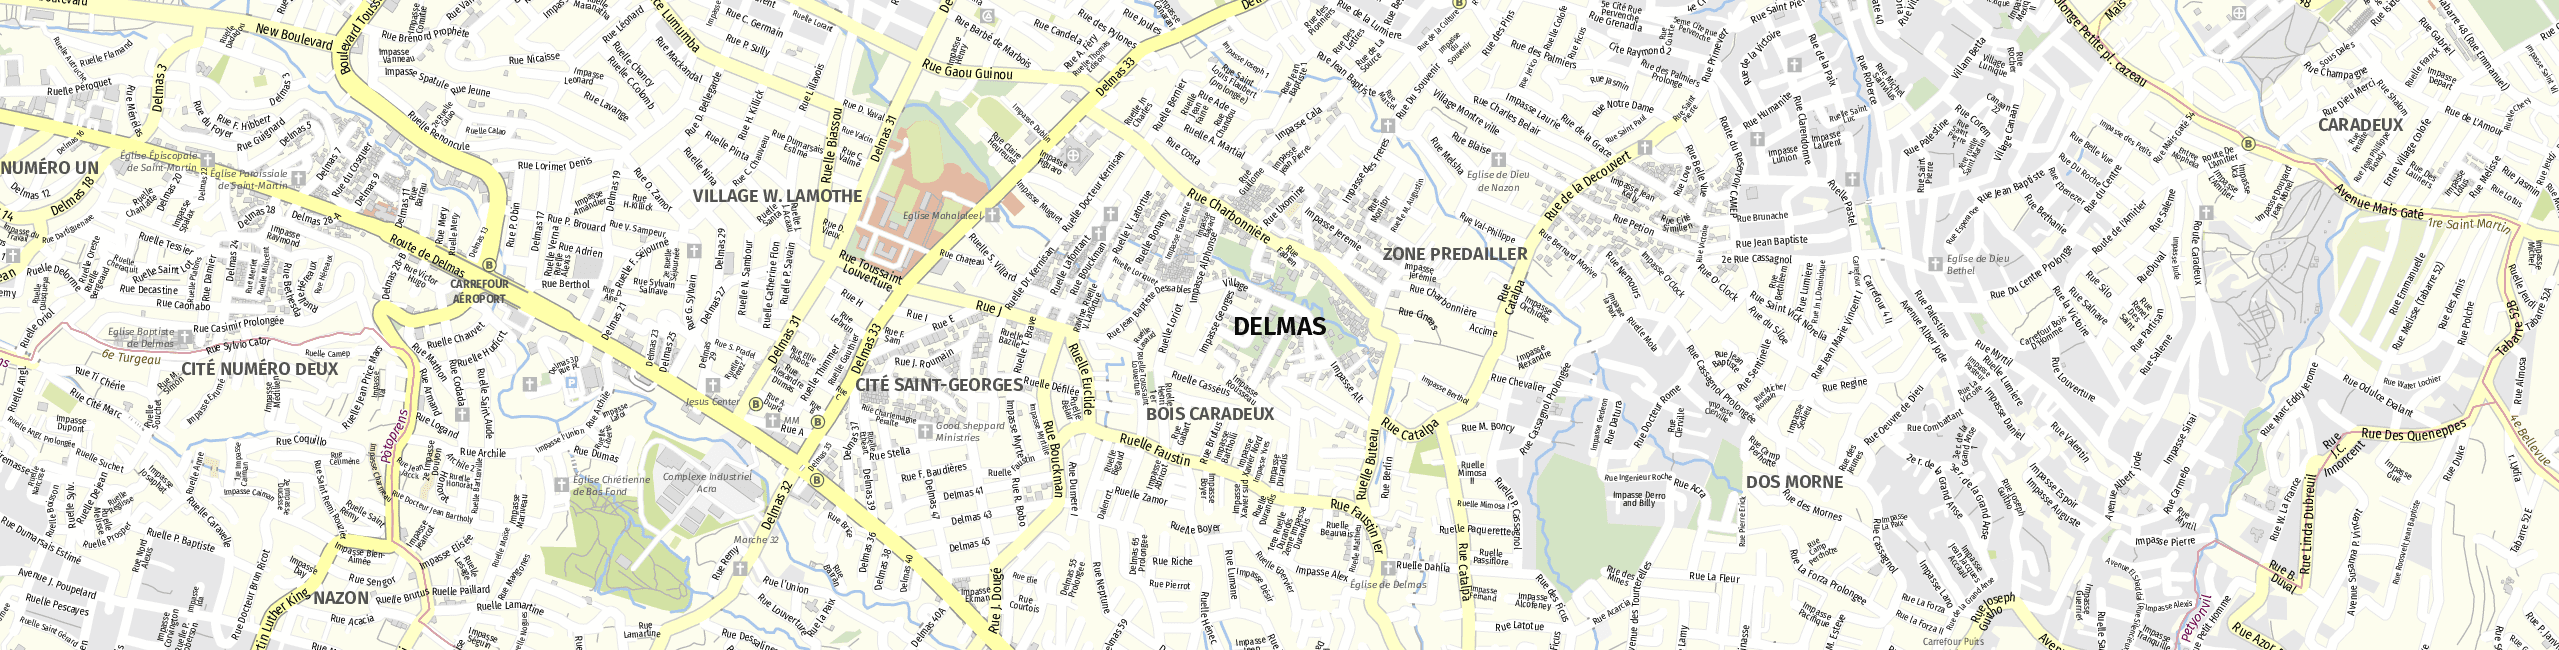 Stadtplan Delmas zum Downloaden.